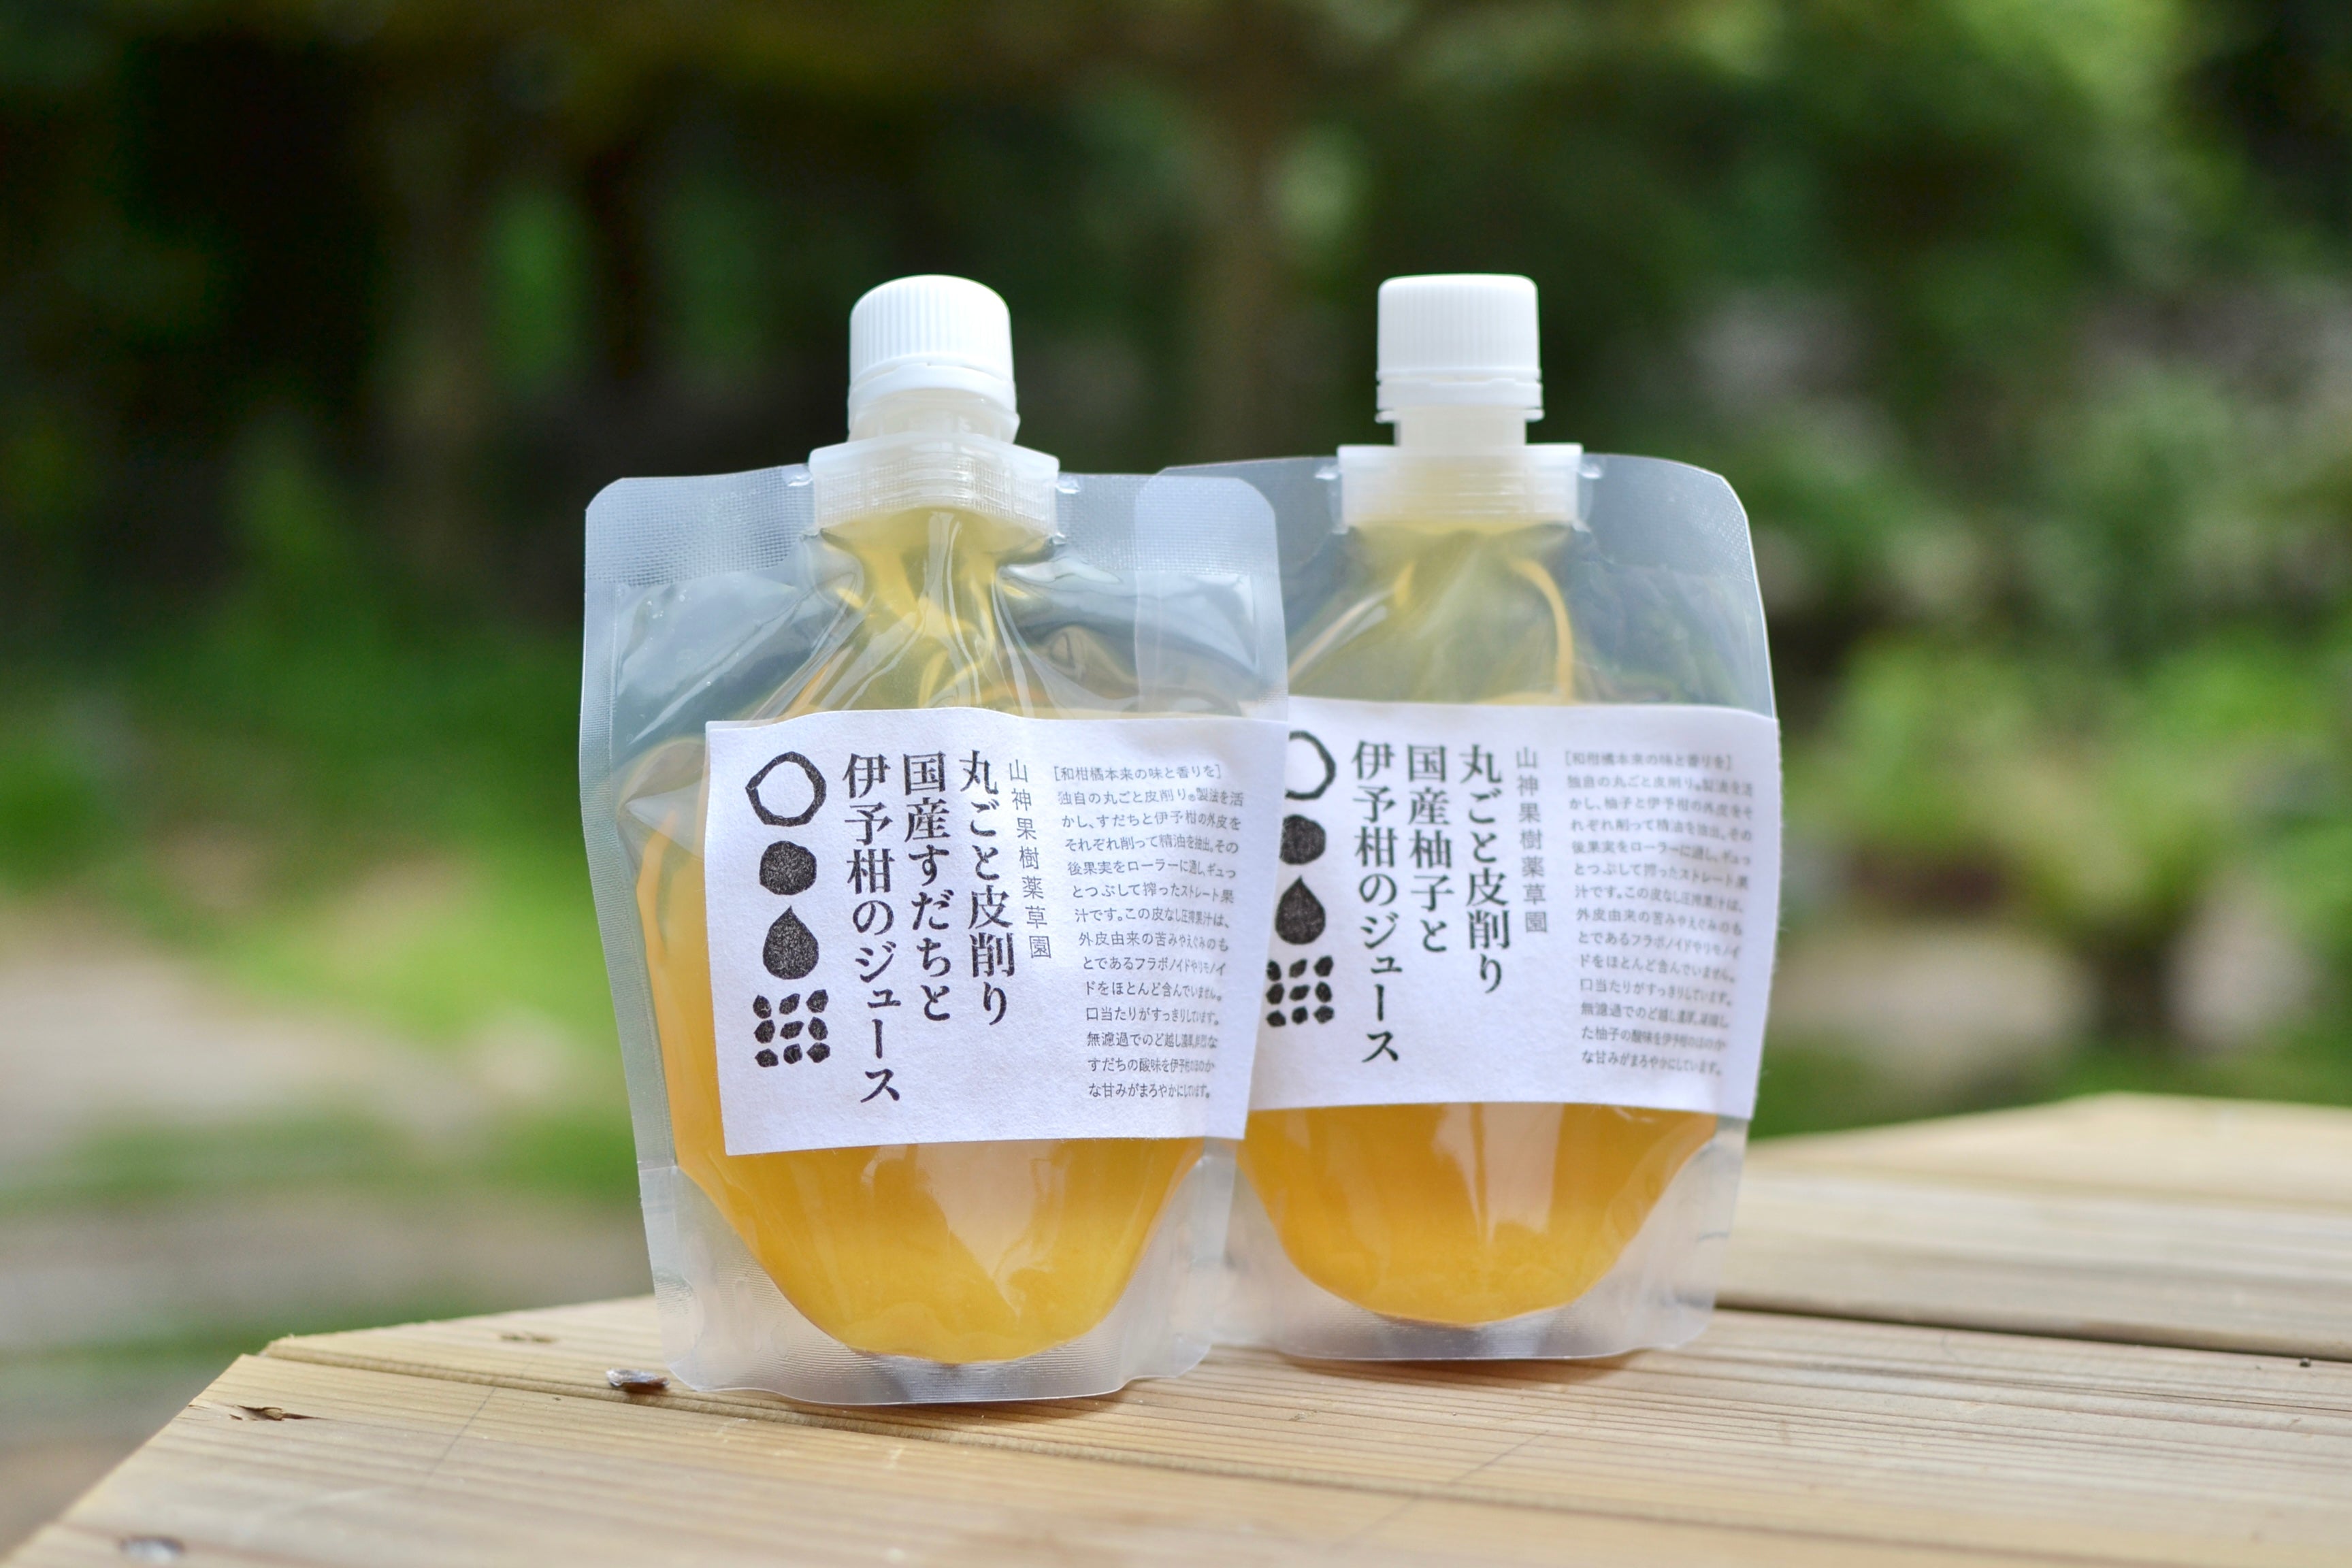 丸ごと皮削り柚子と伊予柑のジュース200ml MARKS&amp;WEB 松山油脂の山神果樹薬草園